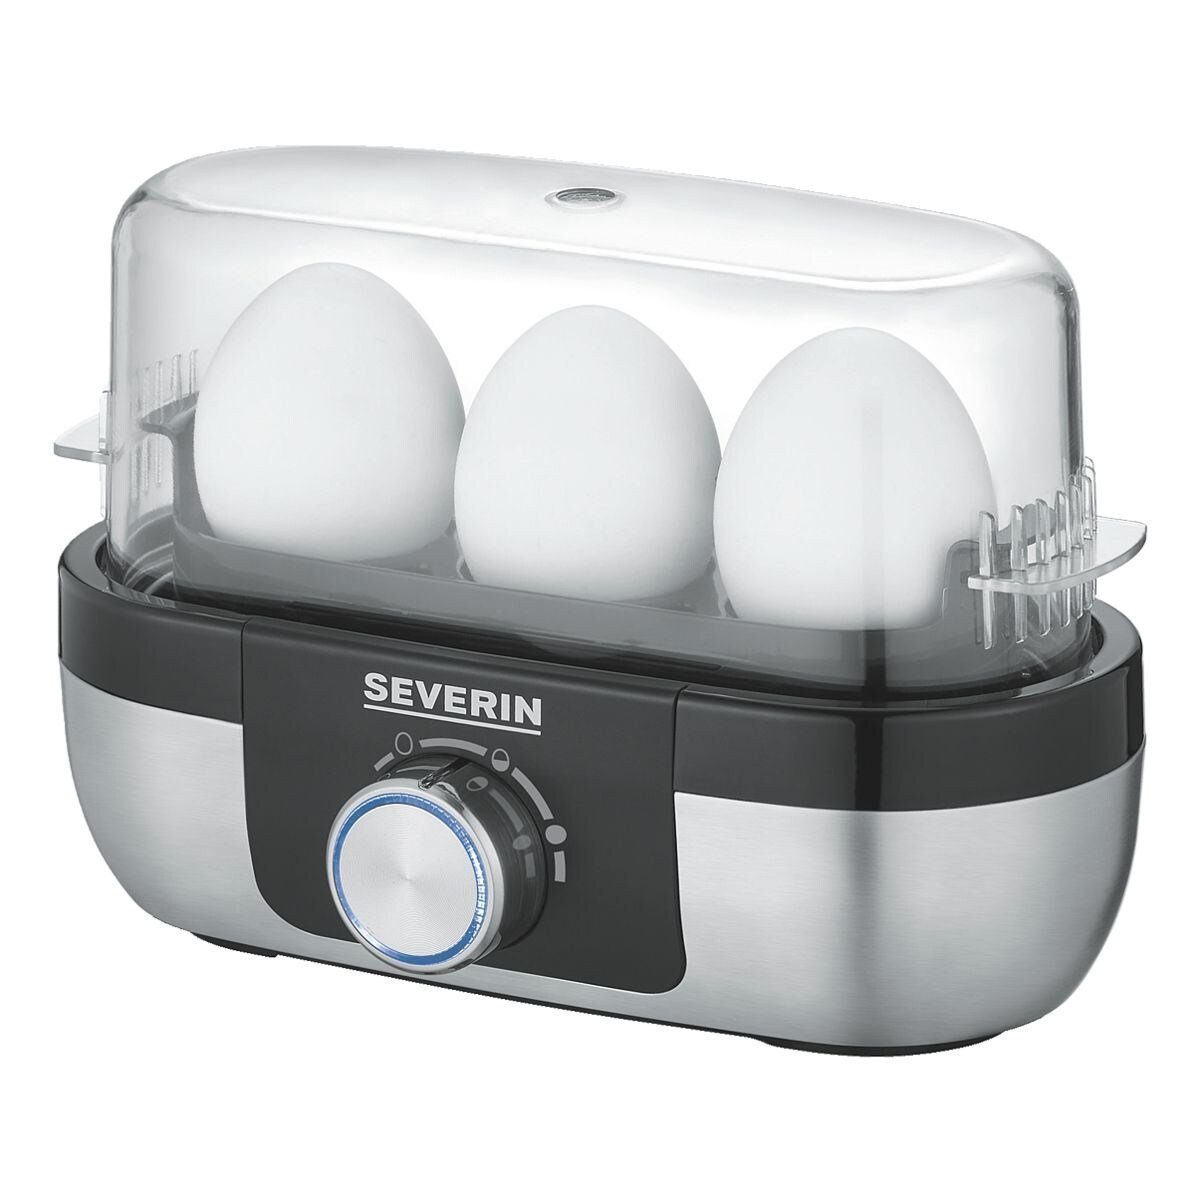 Severin Eierkocher Eierkocher mit Kochzeitüberwachung